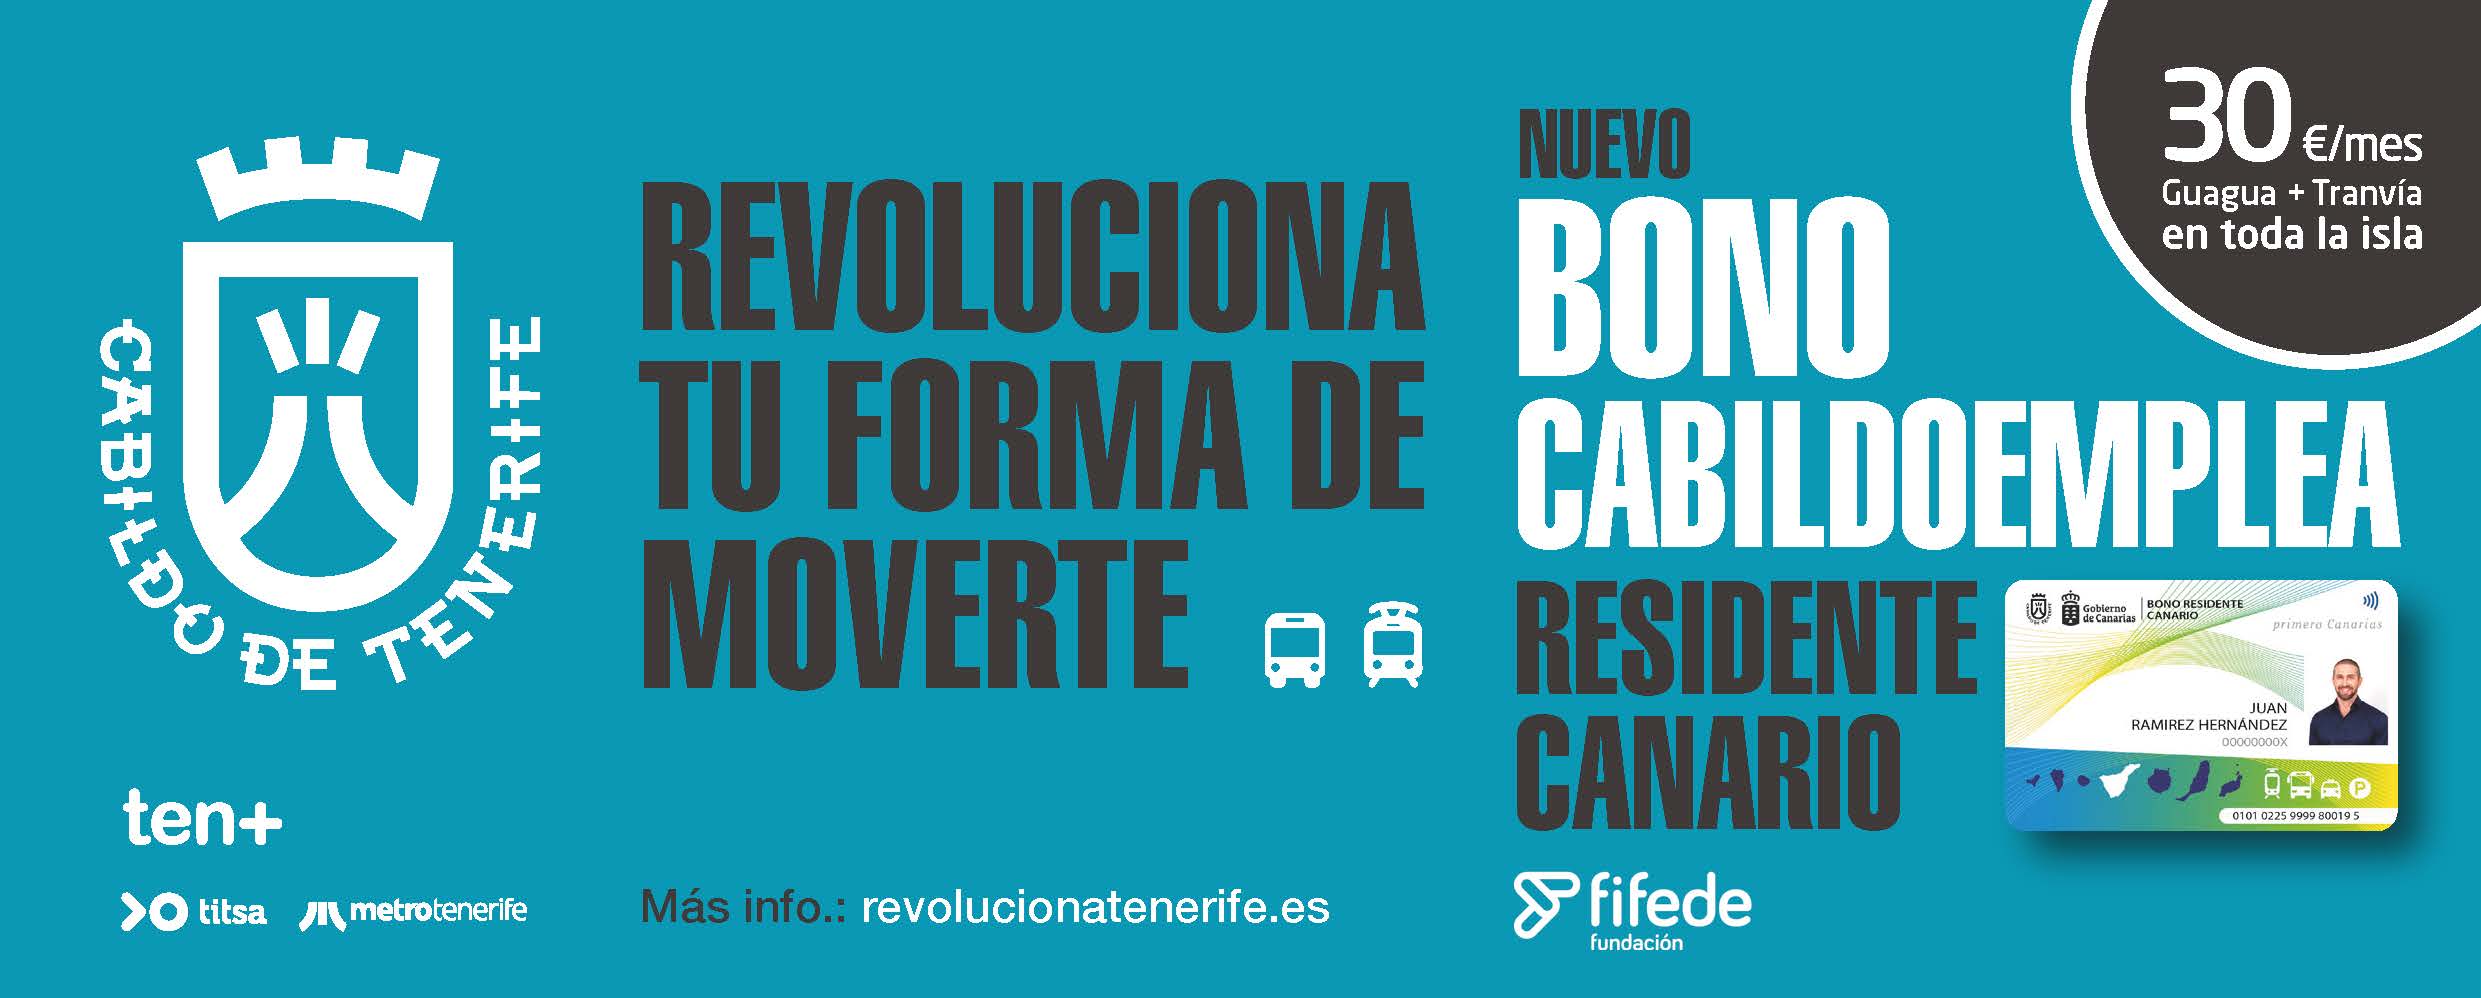 Imagen promocional del bono CabildoEmplea.